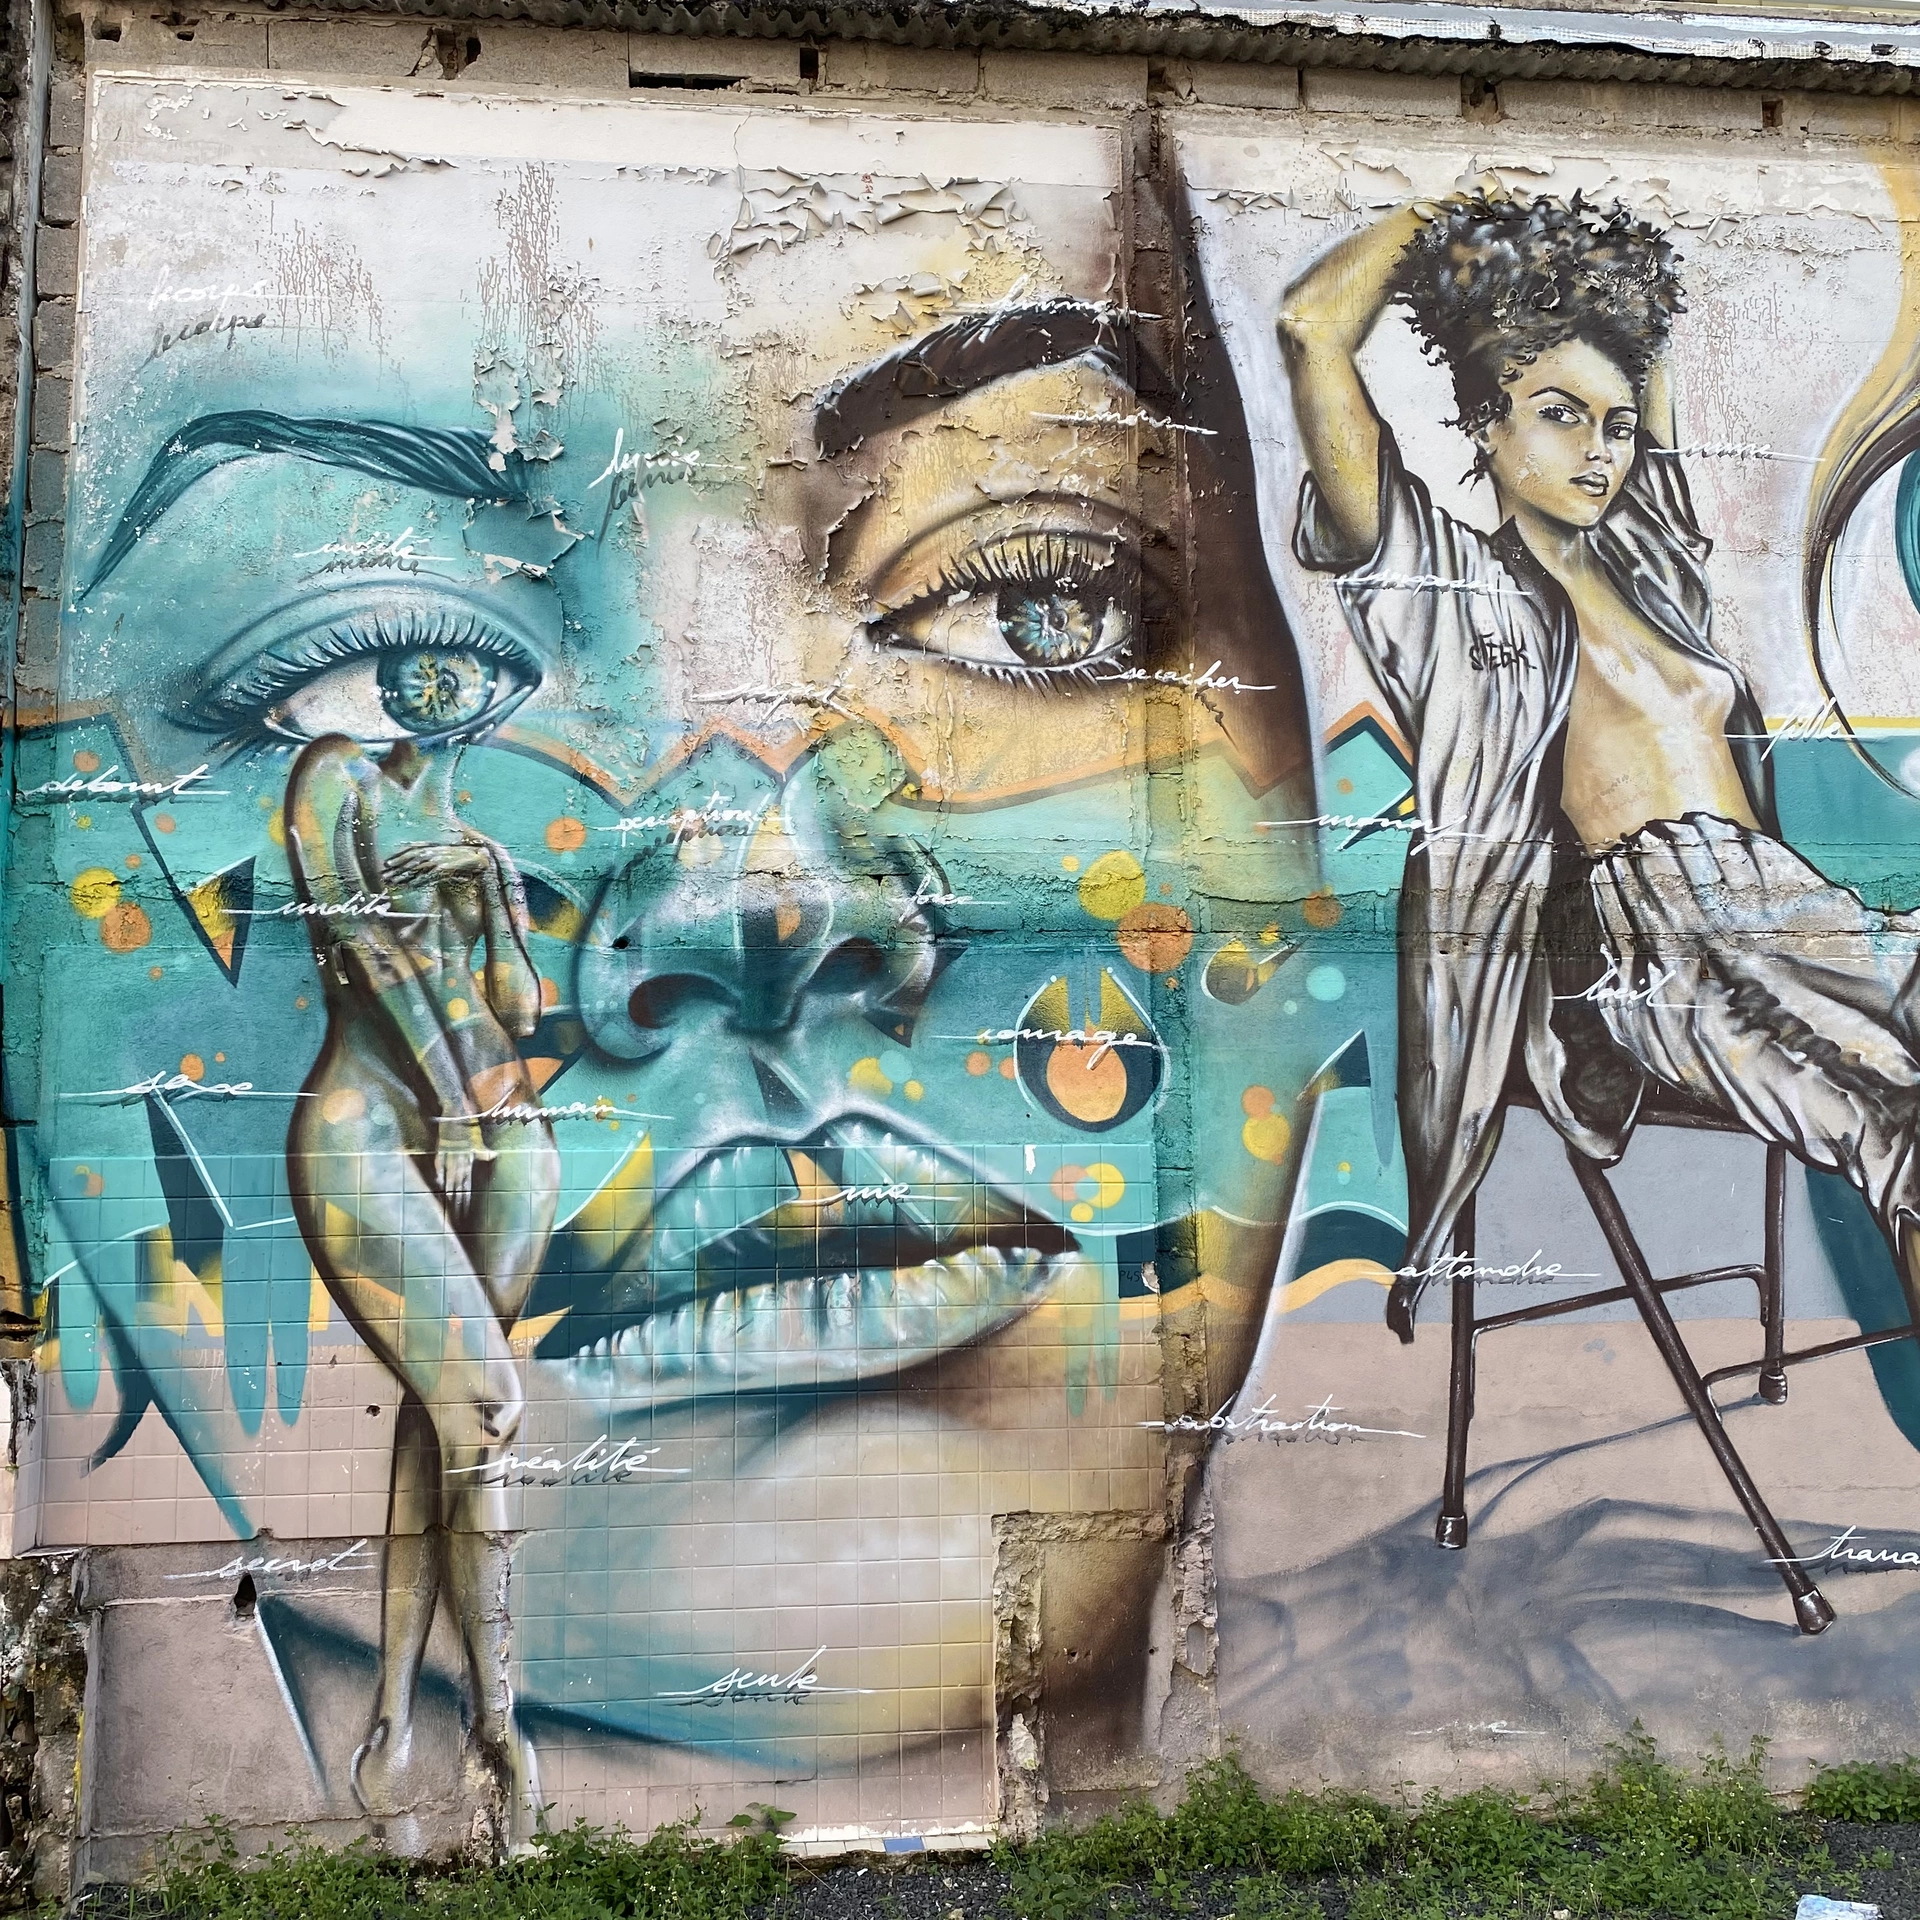 Oeuvre de Street Art à Pointe-à-Pitre